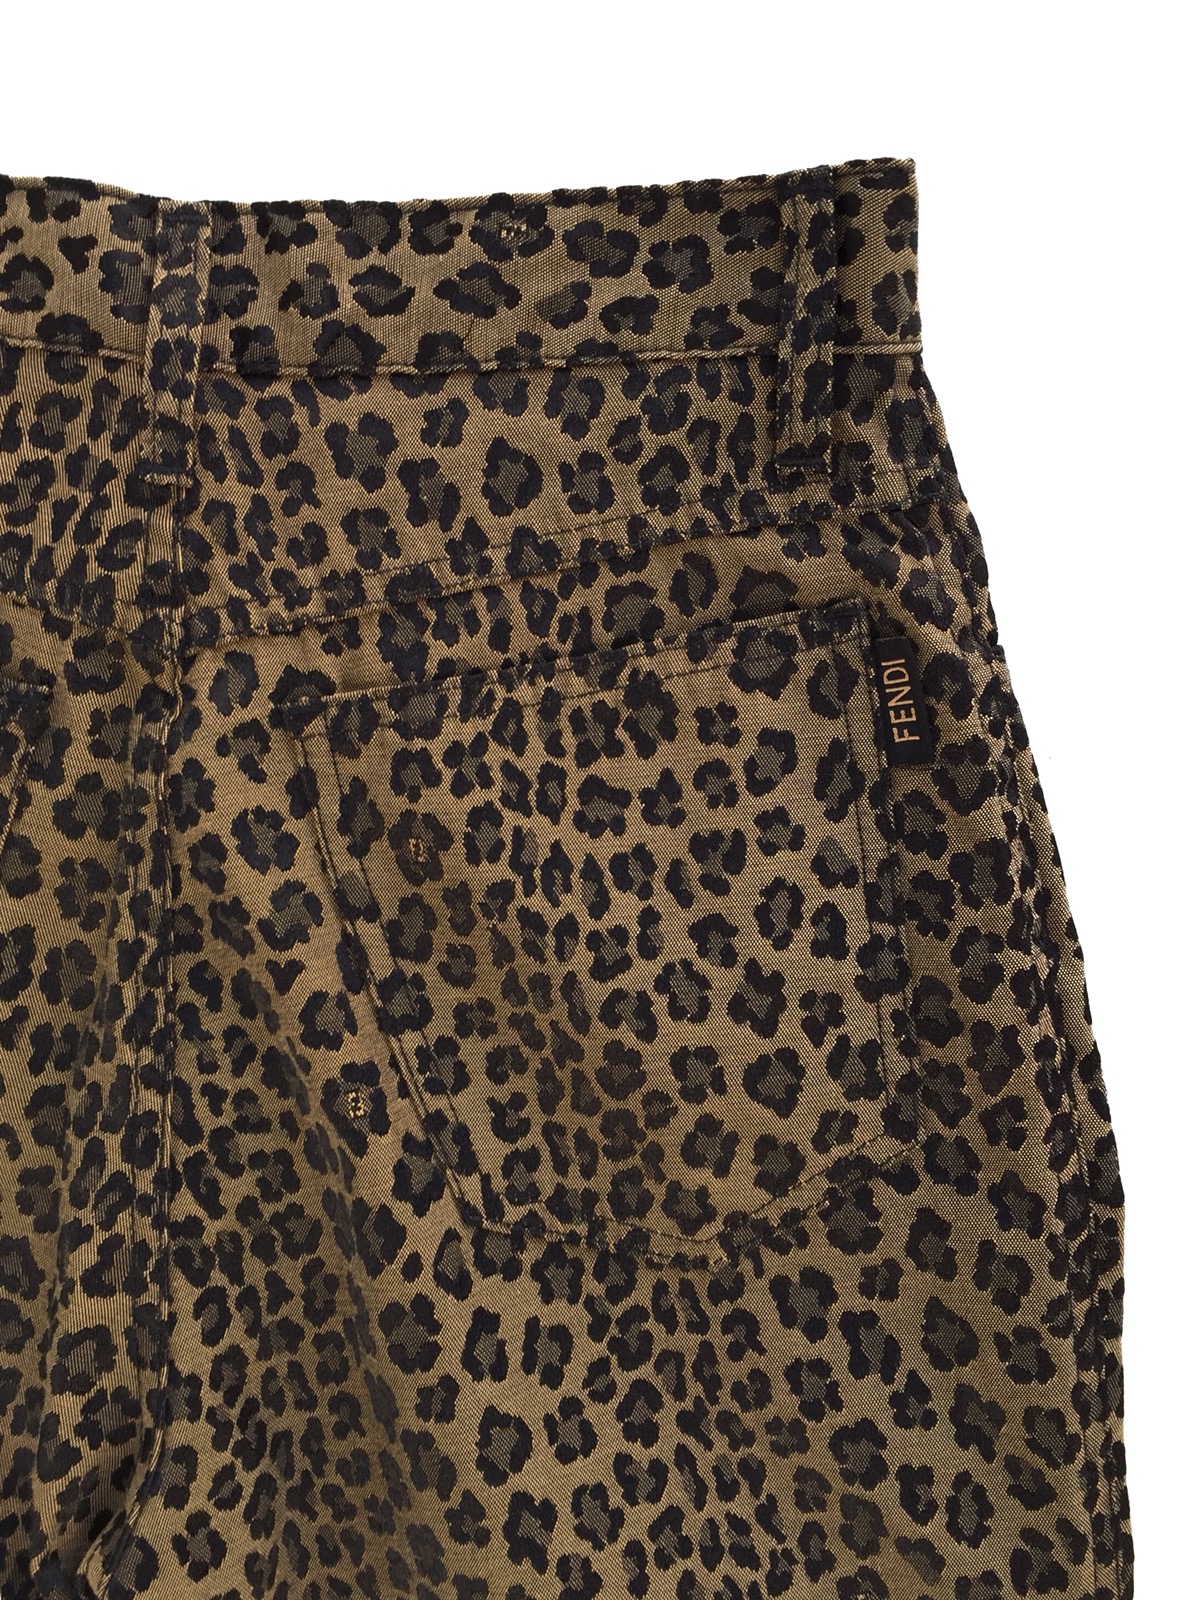 Vintage Authentic Fendi Leopard Pants - 8